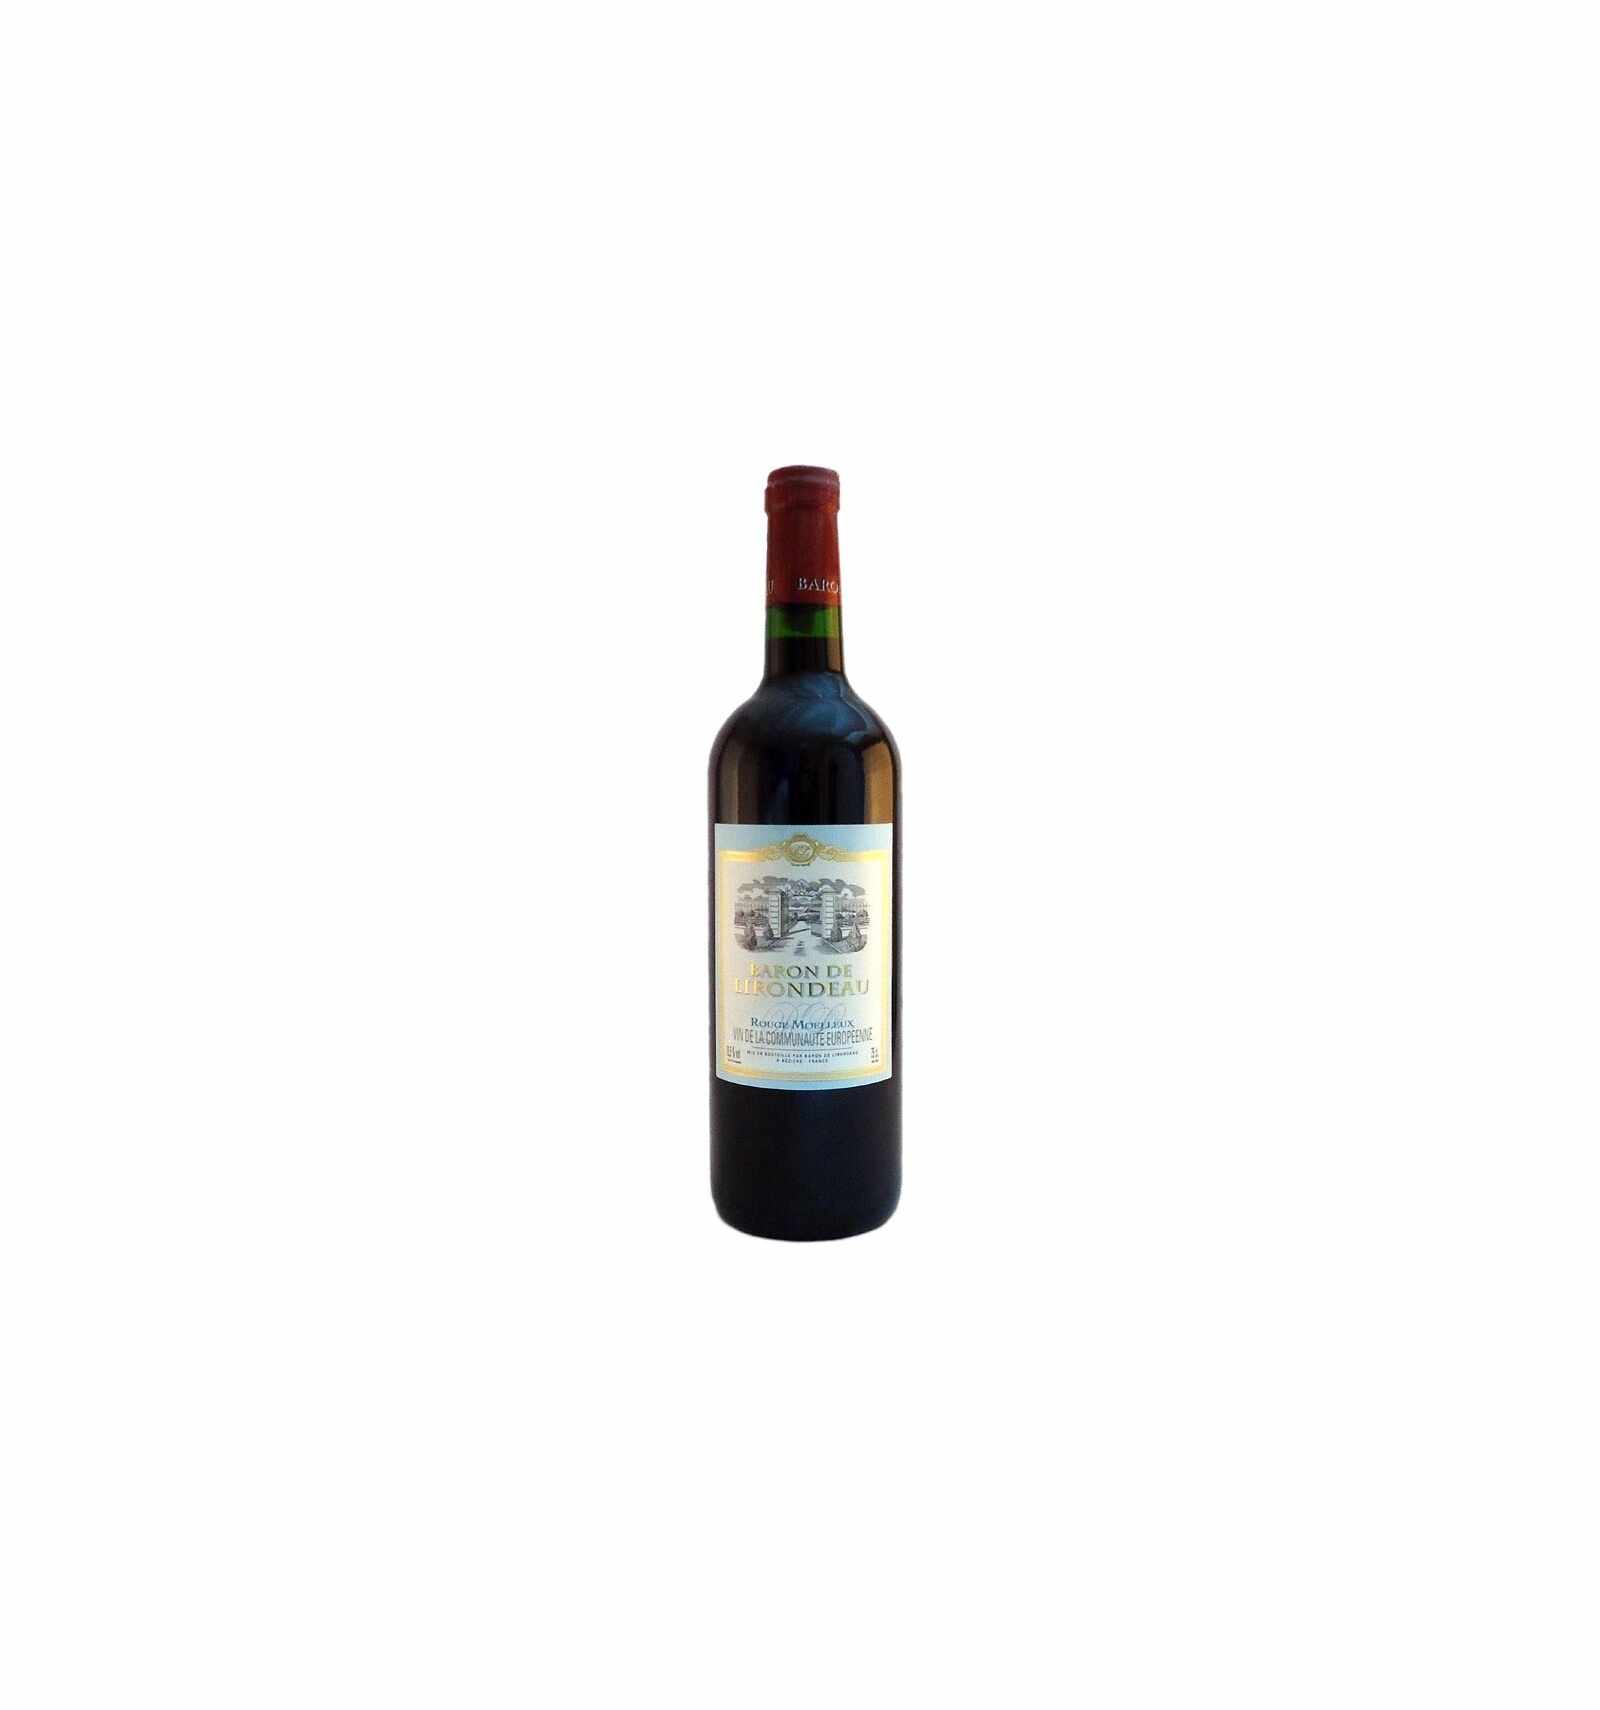 Vin rosu demidulce, Cupaj, Baron de Lirondeau Coteaux de BÃ©ziers, 0.75L, Franta